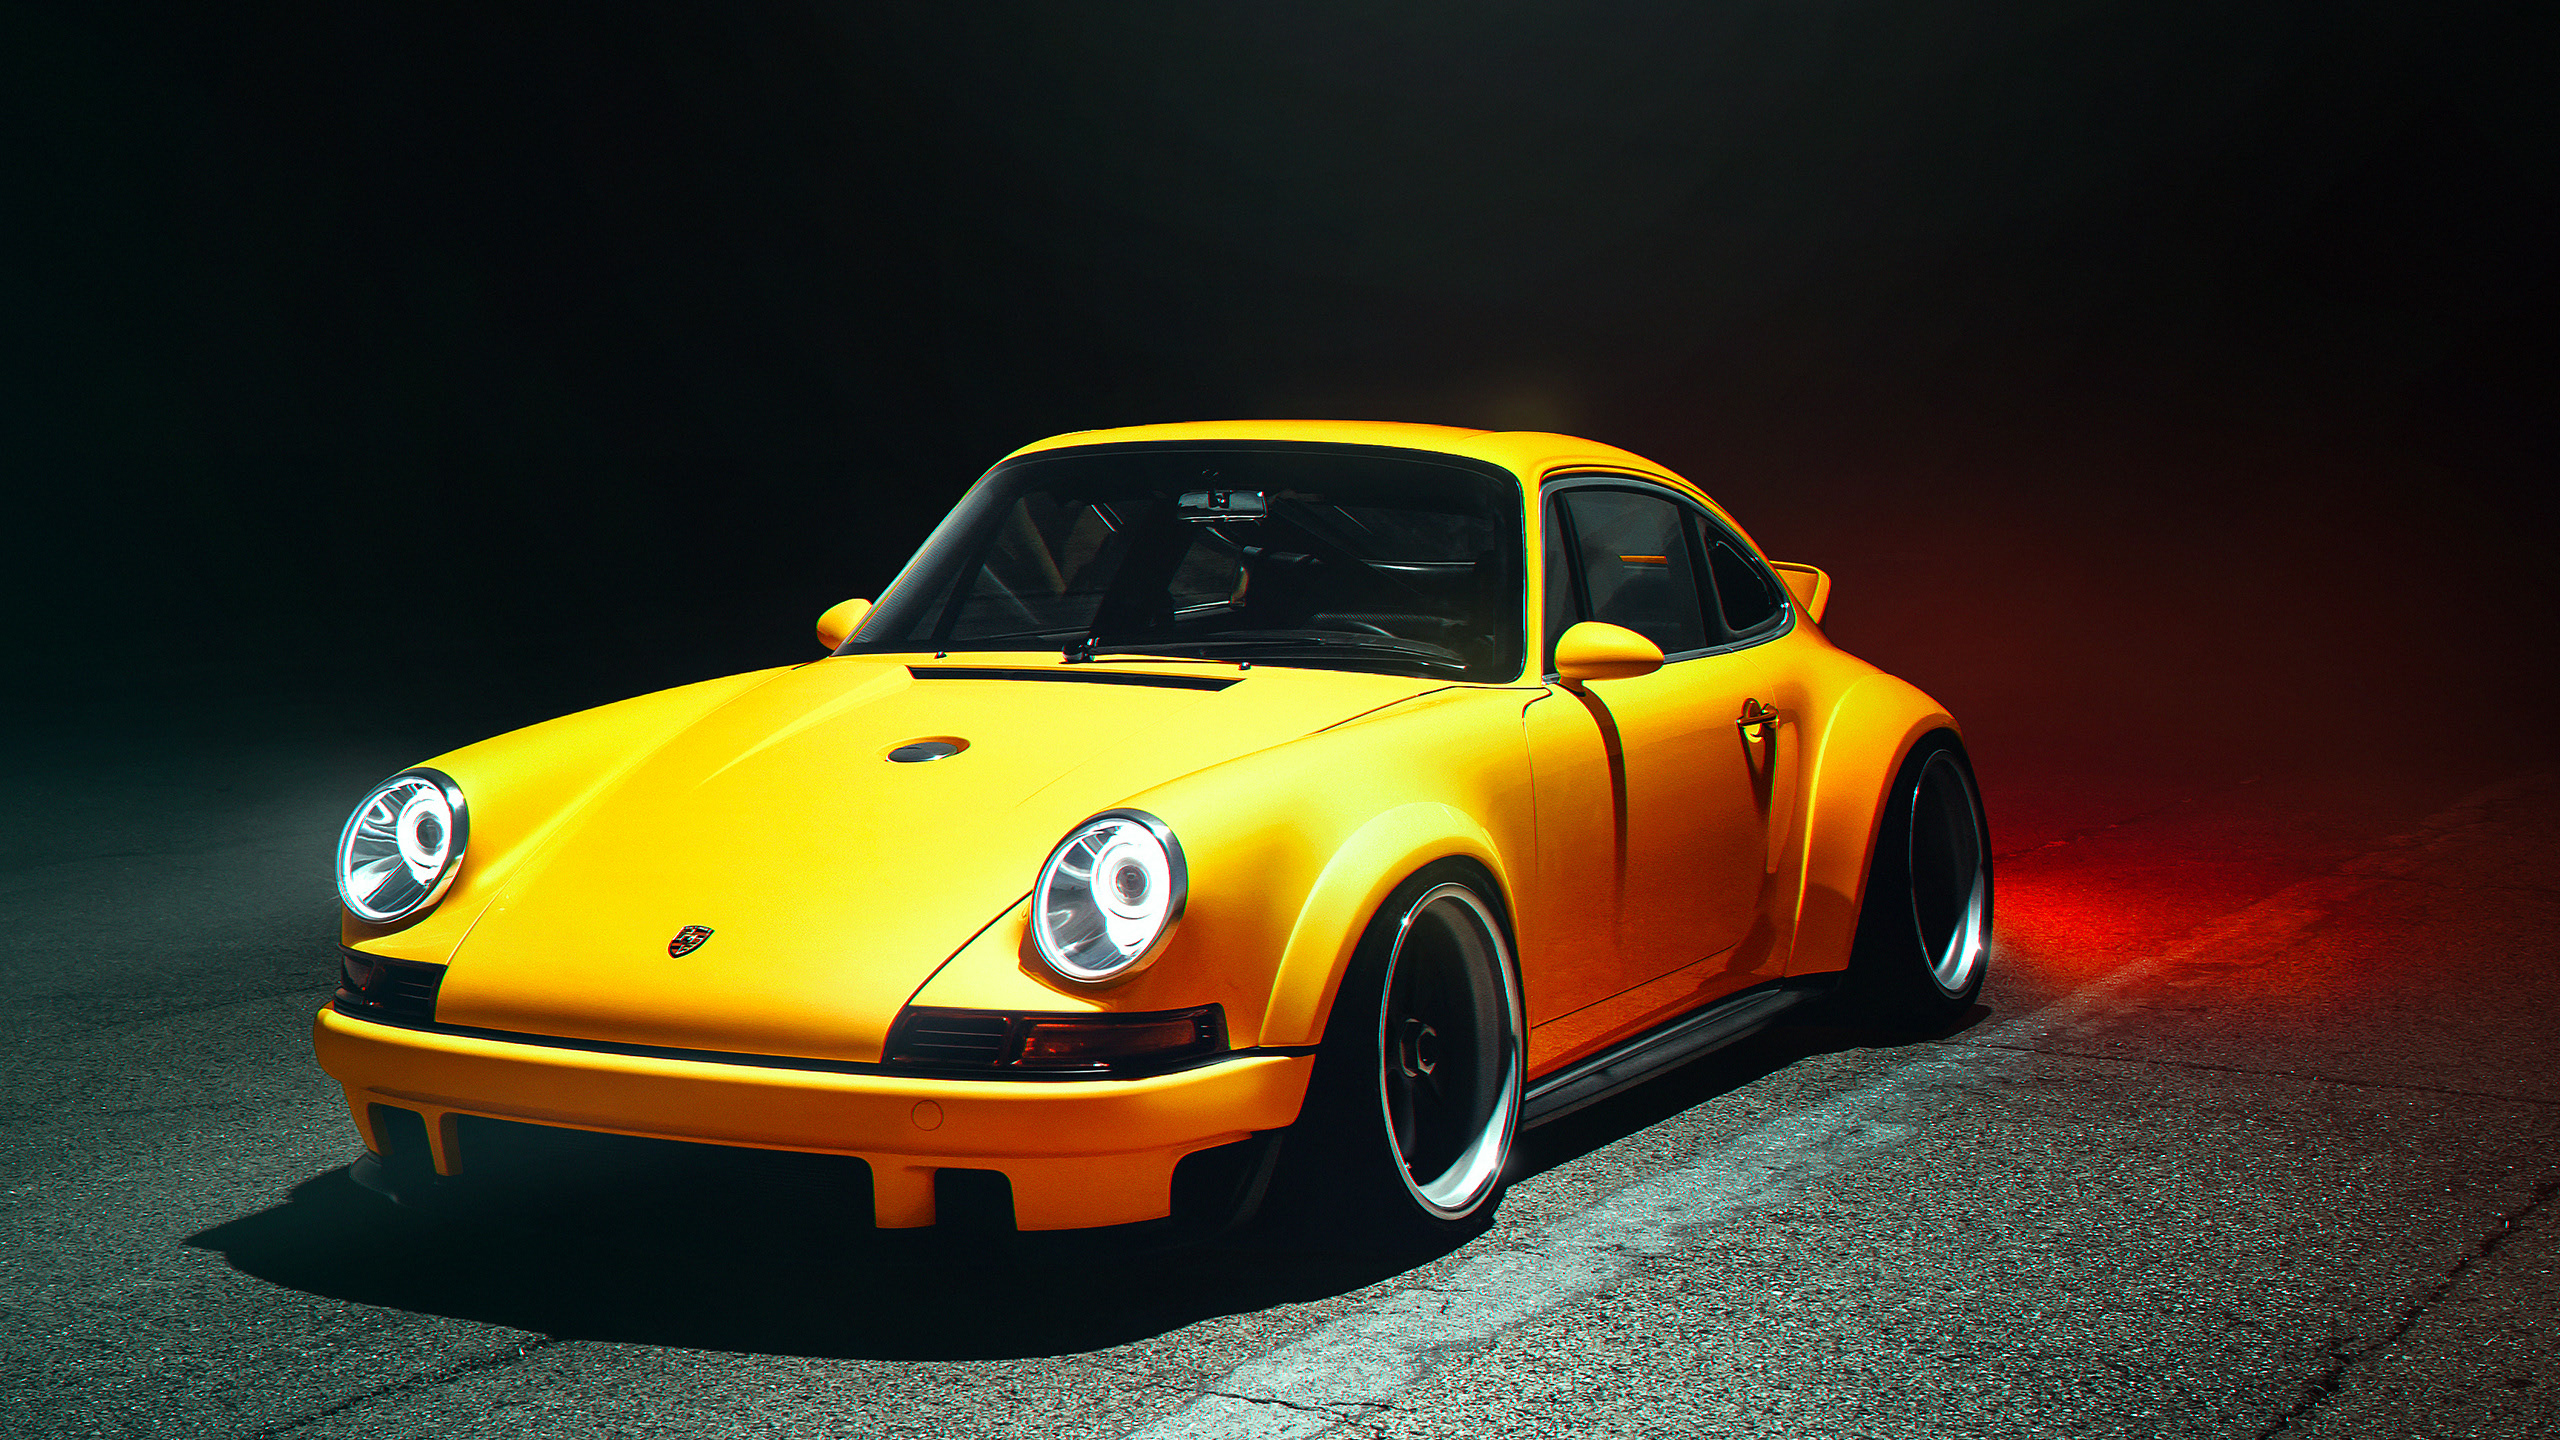 Car Automotive Porsche Porsche 911 German Cars Yellow Cars Night Wallpaper:2560x1440